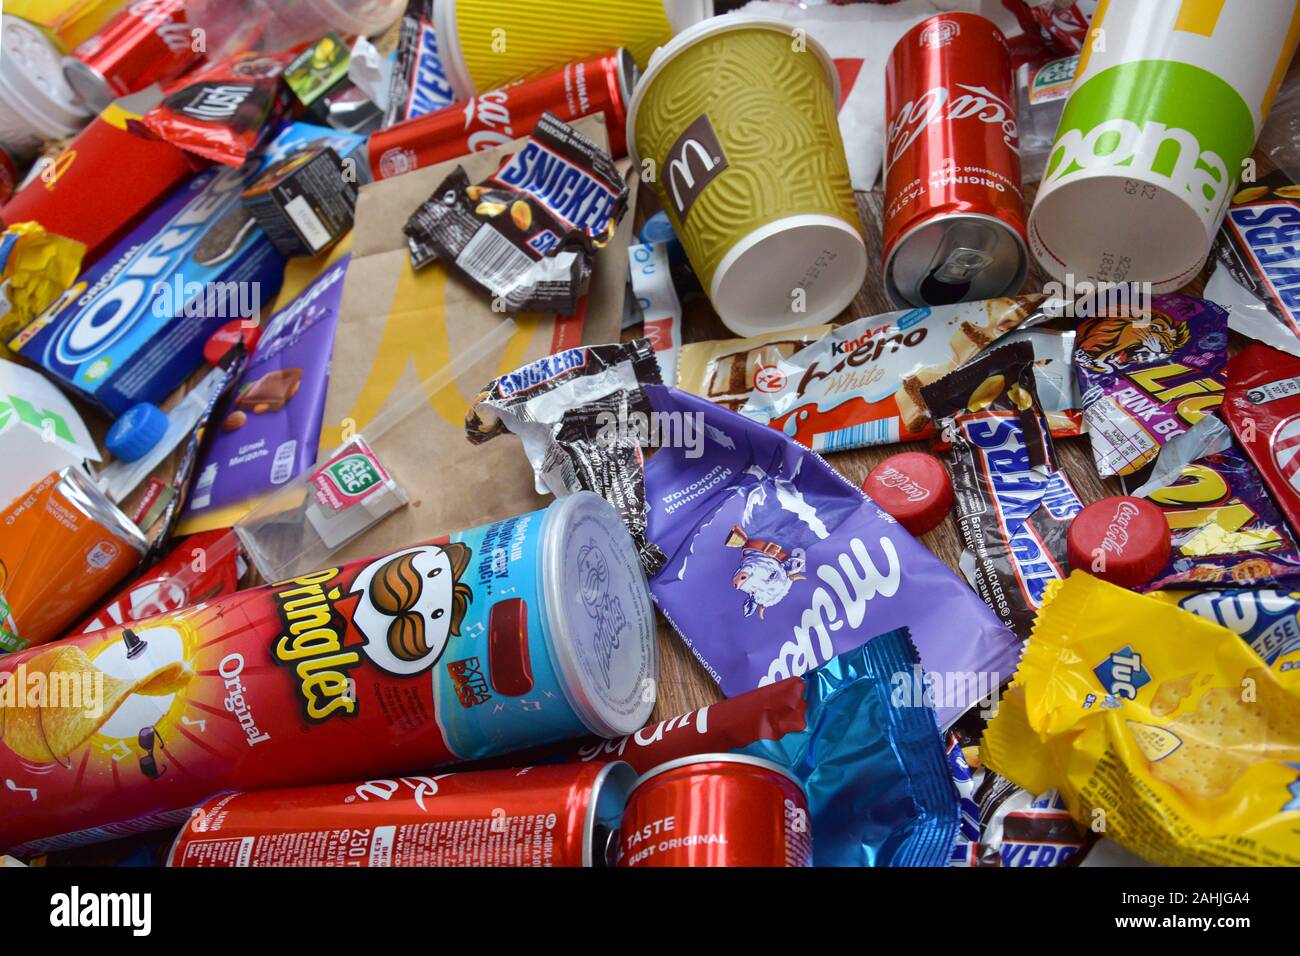 Nueva York, Estados Unidos - 25 de diciembre de 2019: el montón de basura color desechables muchos productos comestibles de famosos fabricantes de alimentos y bebidas. Latas de refresco, c